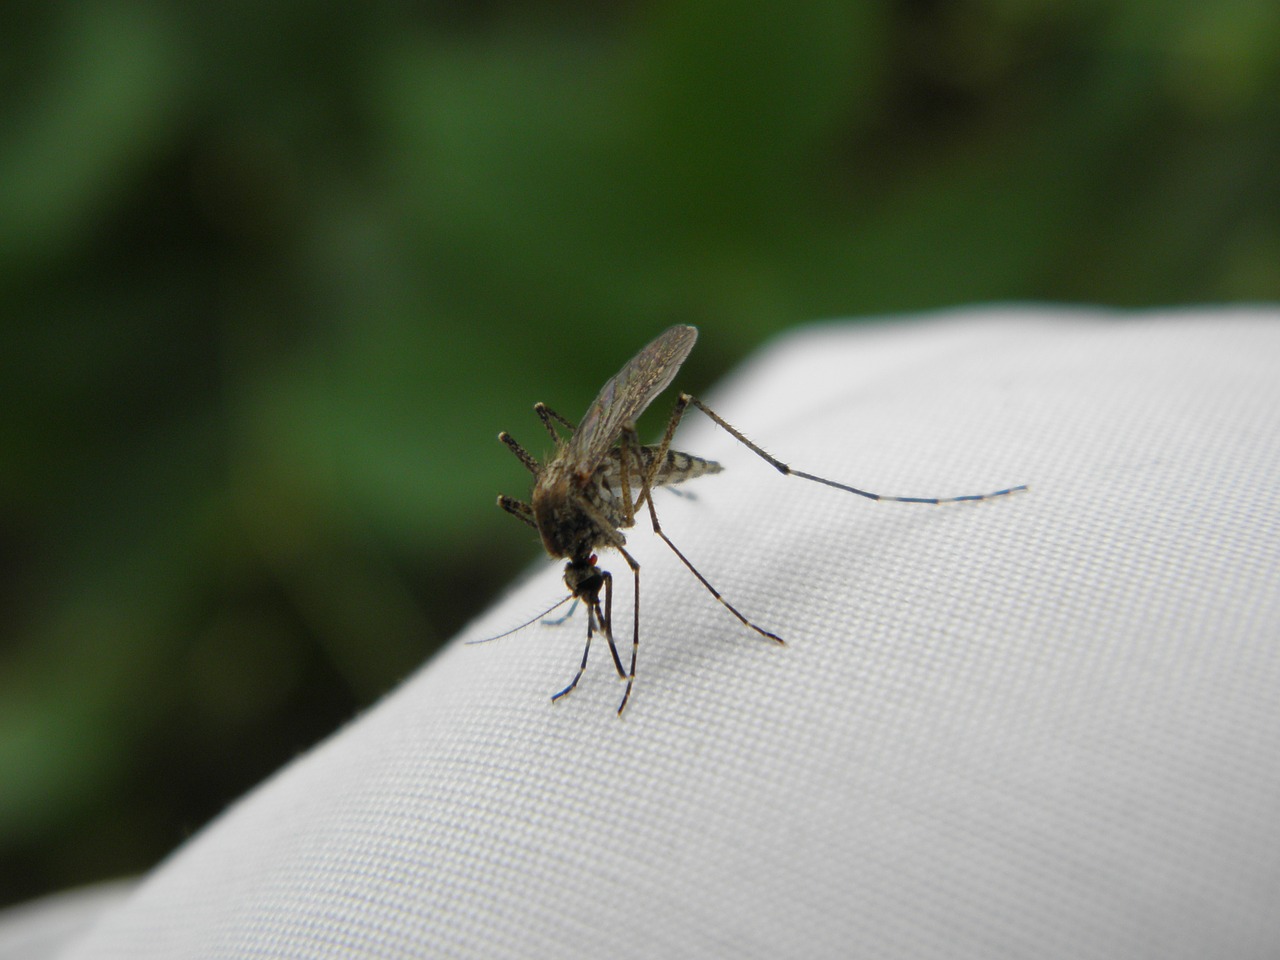 Preparaty przeciw owadom. Czy są skuteczne i bezpieczne?